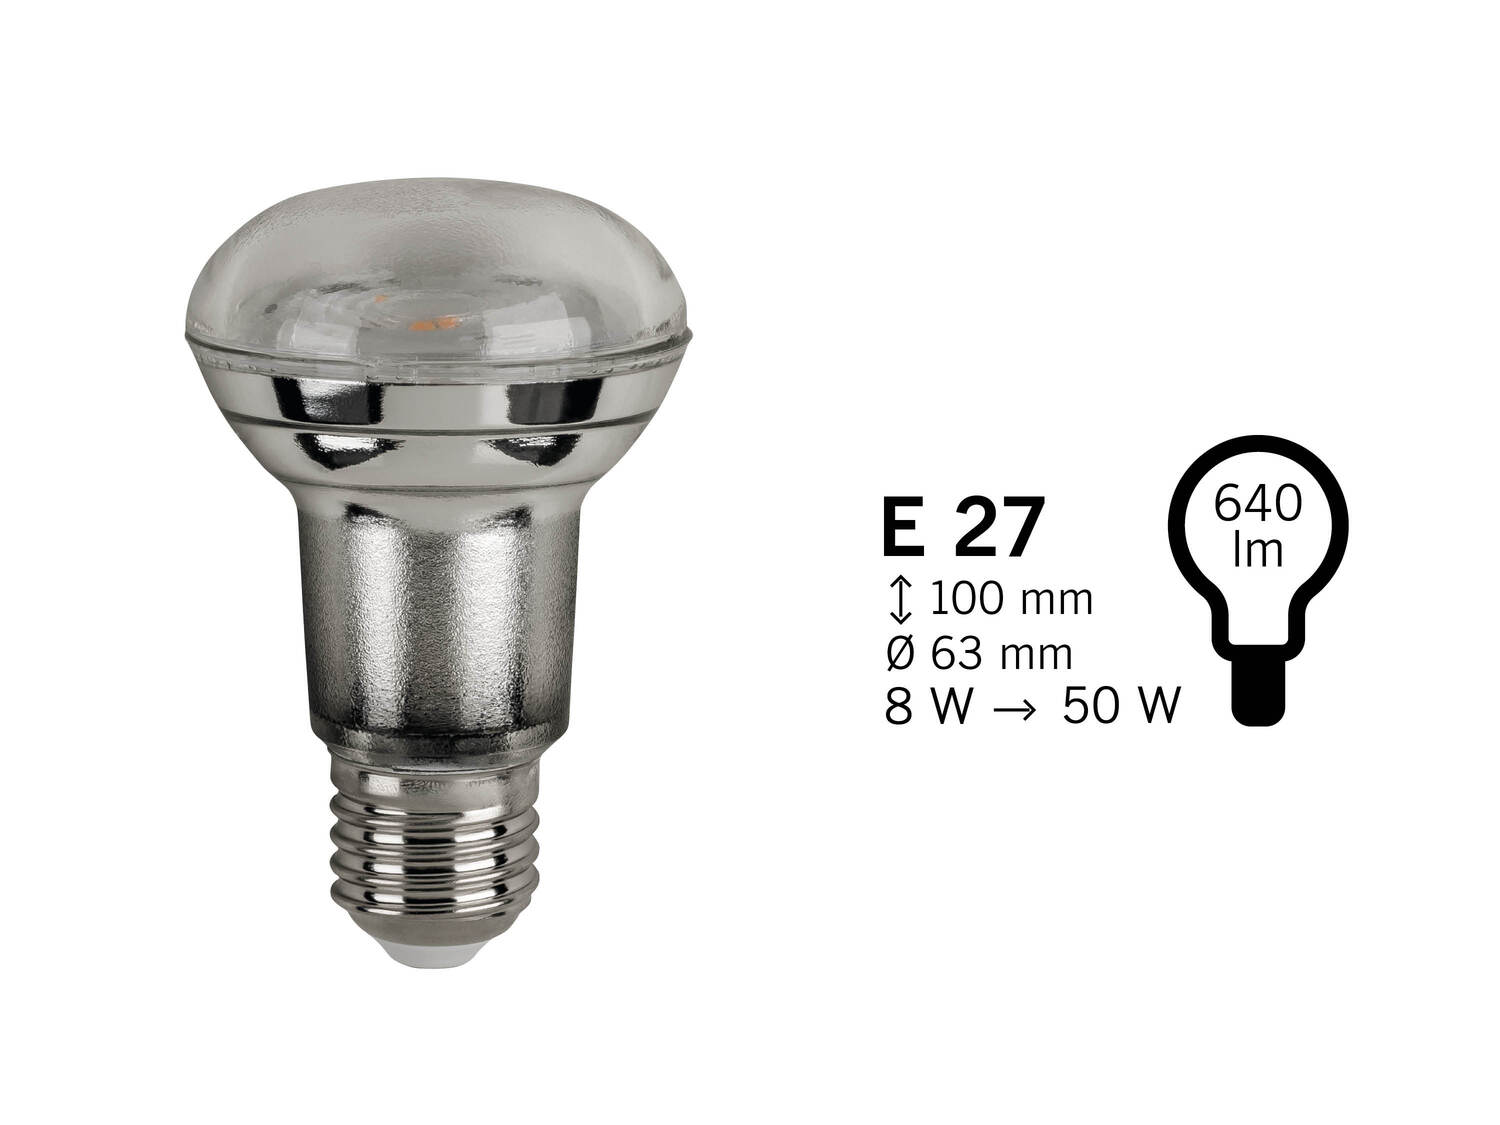 Żarówka LED Livarno, cena 7,99 PLN 
3 wzory 
- klasa energetyczna A+
Opis

- ...